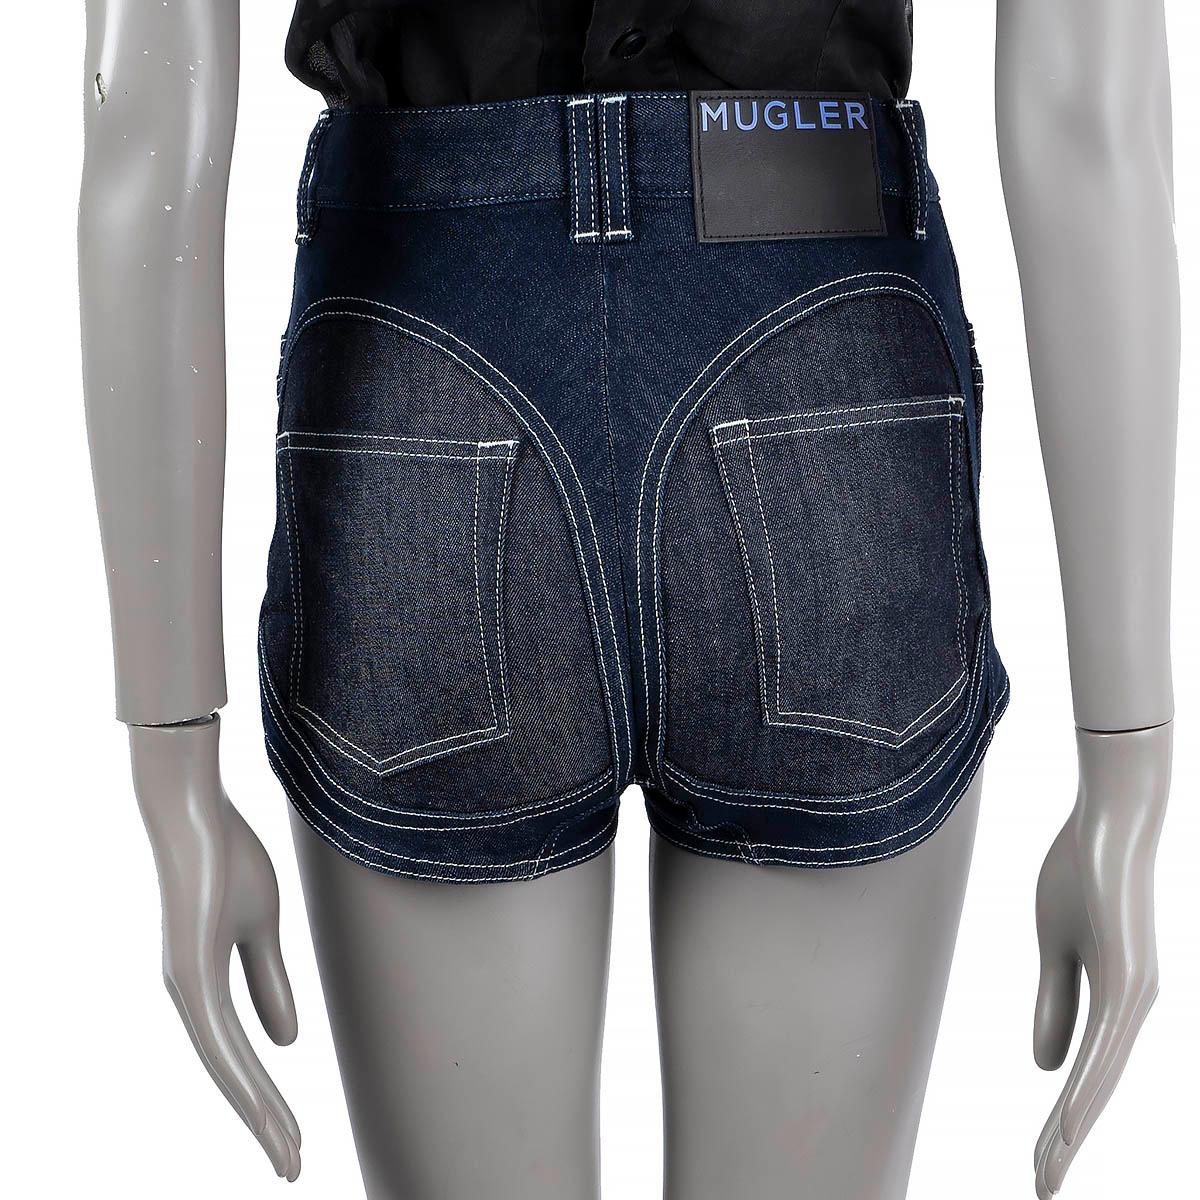 MUGLER Dunkelblaue Baumwoll-Jeans SPIRAL HIGH WAISTED HOT PANTS Shorts 36 XS 1